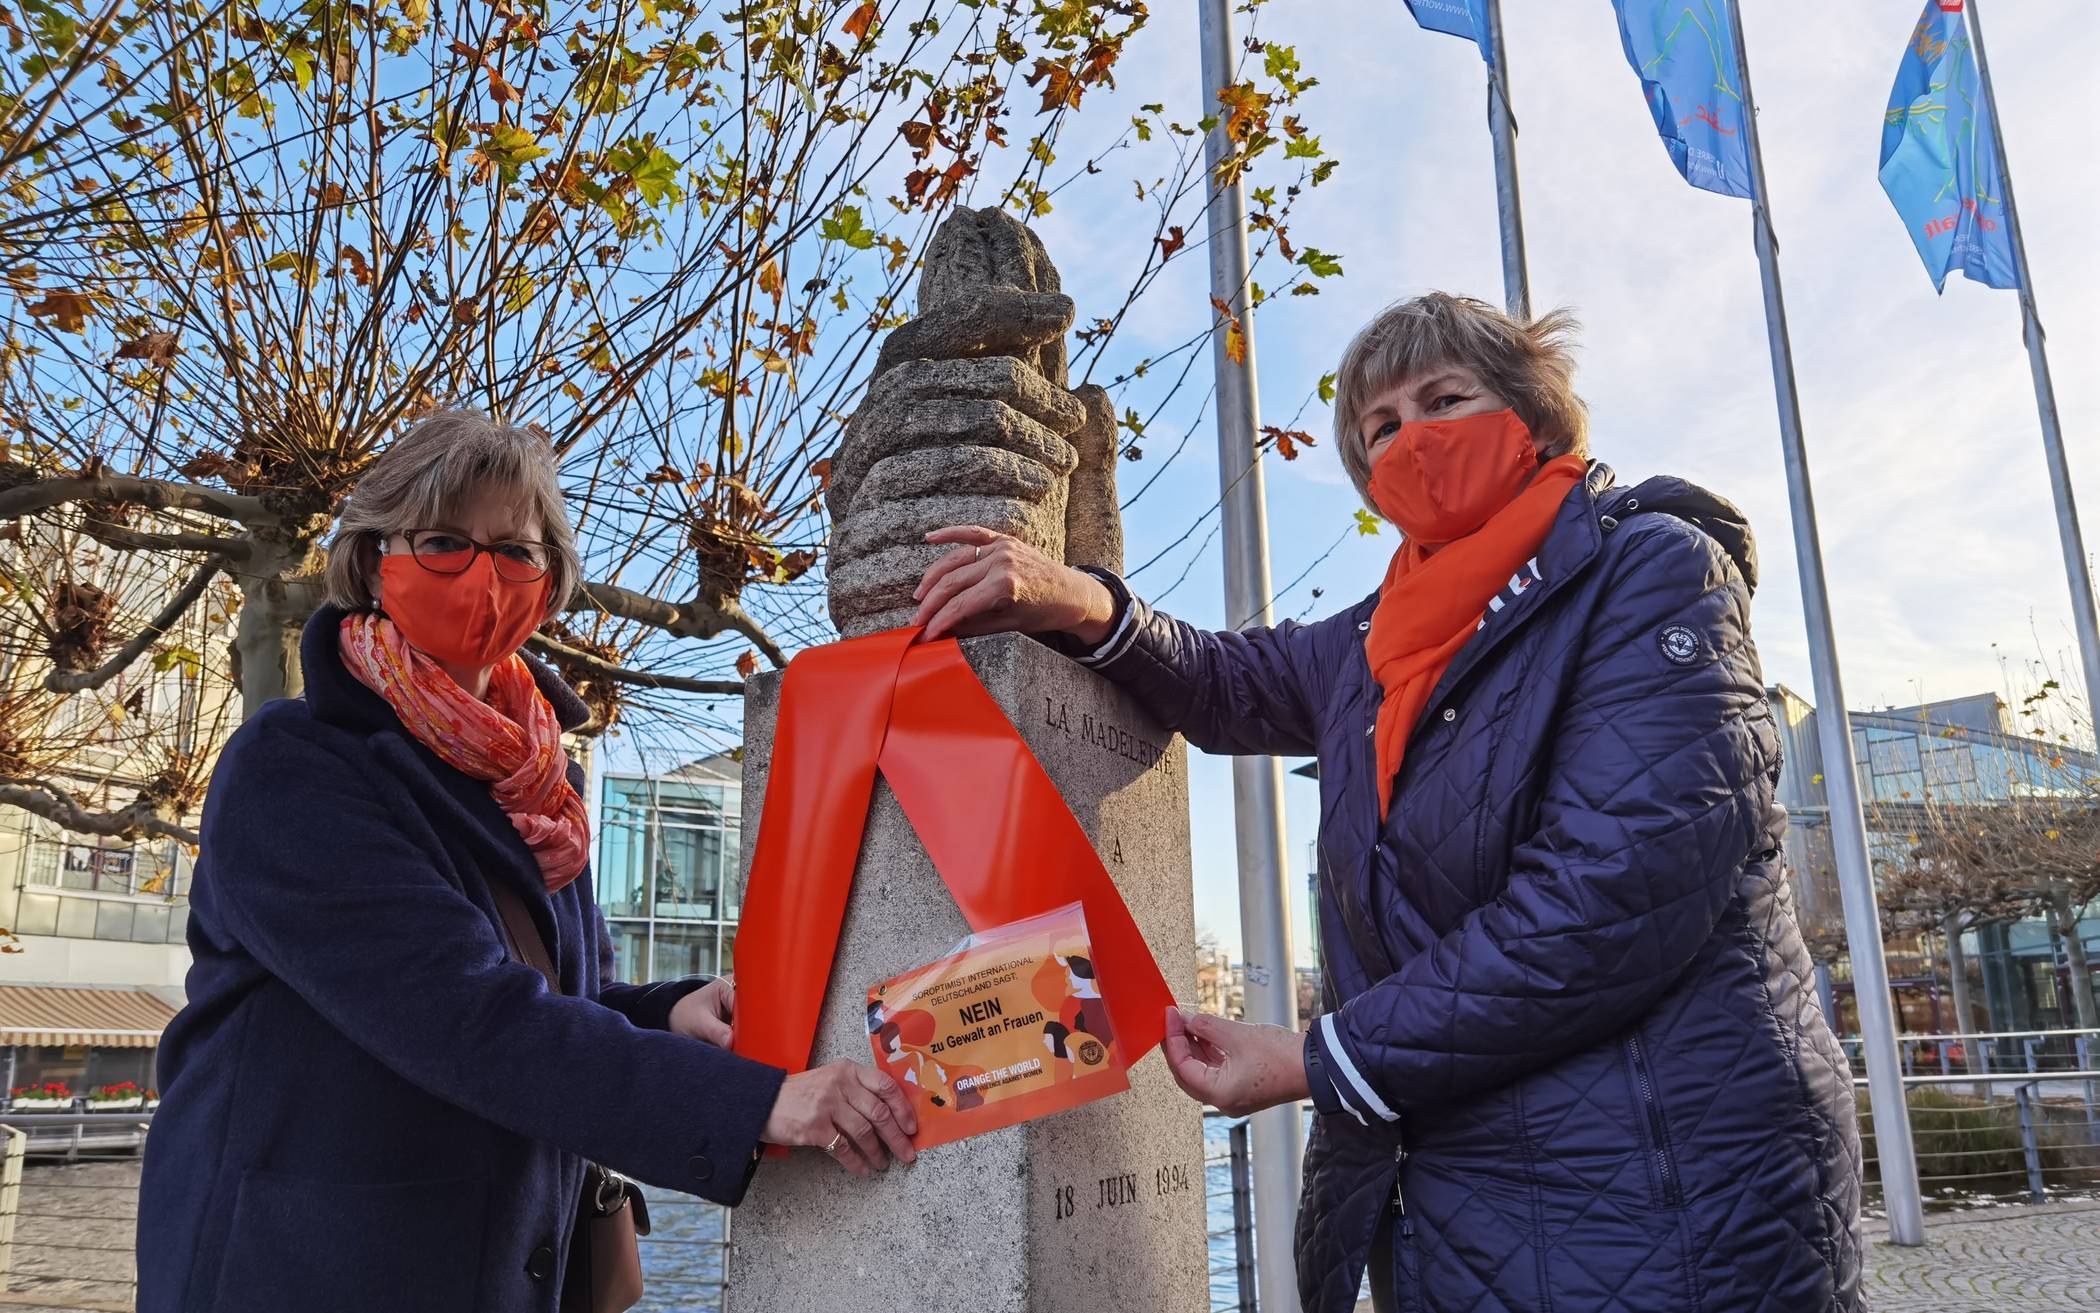  Marlies Kallen und Christiane Otto von den Soroptimistinnen schmückten die Flamme vor dem Rathaus.  